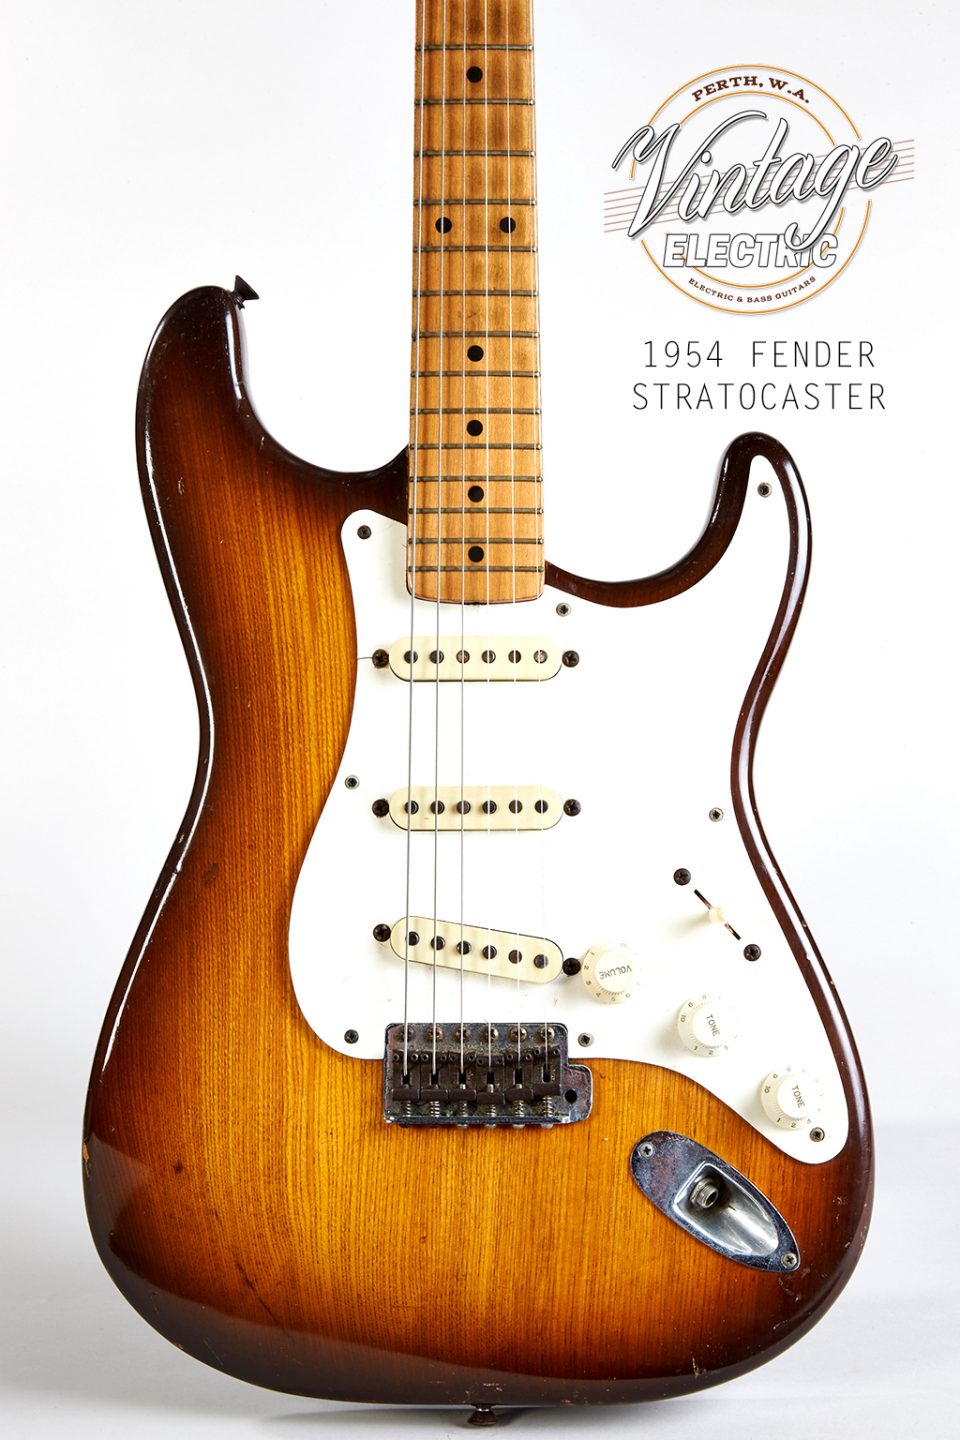 1954 Fender Stratocaster Body